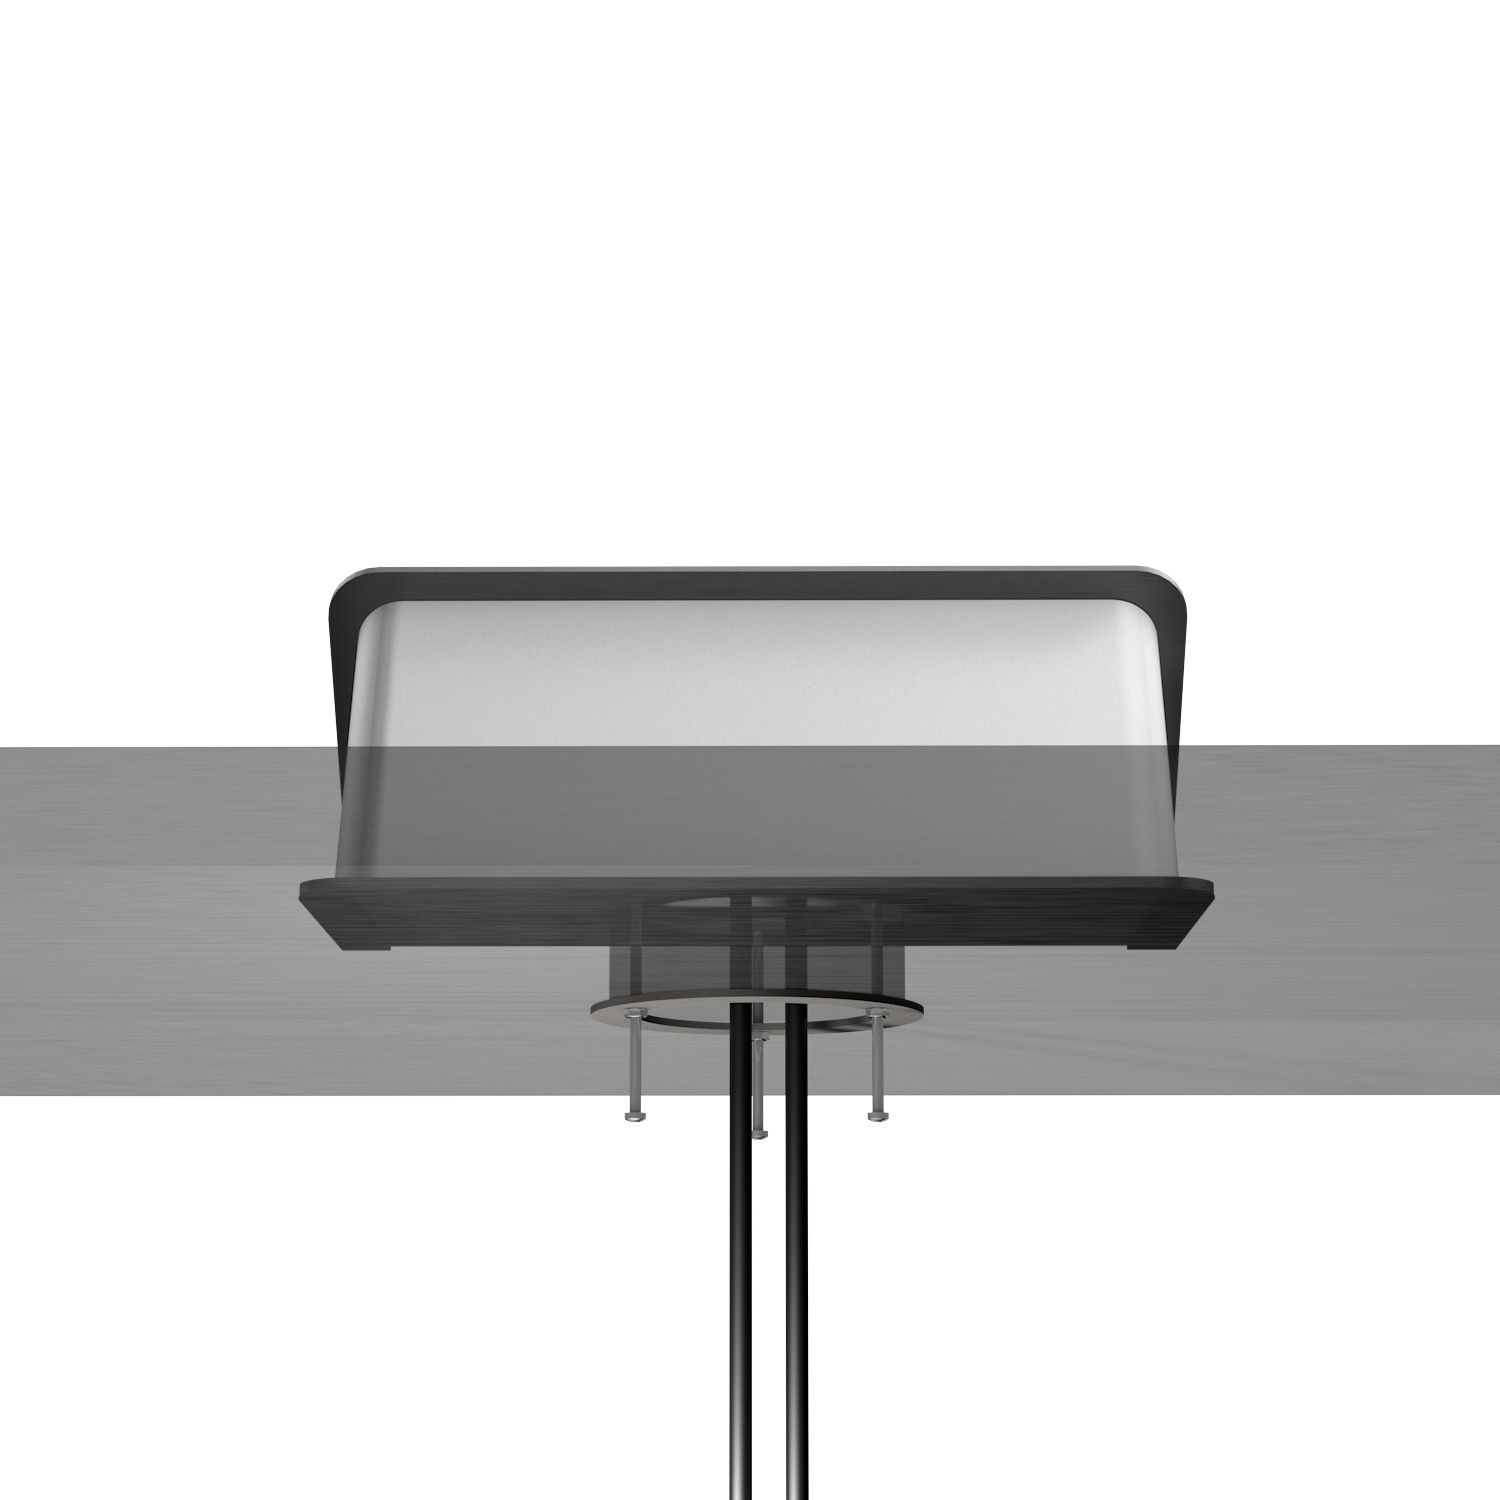 Kindermann CablePort desk² 80 4-fach 2xStrom - 1x USB-A / 1x USB-C - Tischeinbaugehäuse - Edelstahl